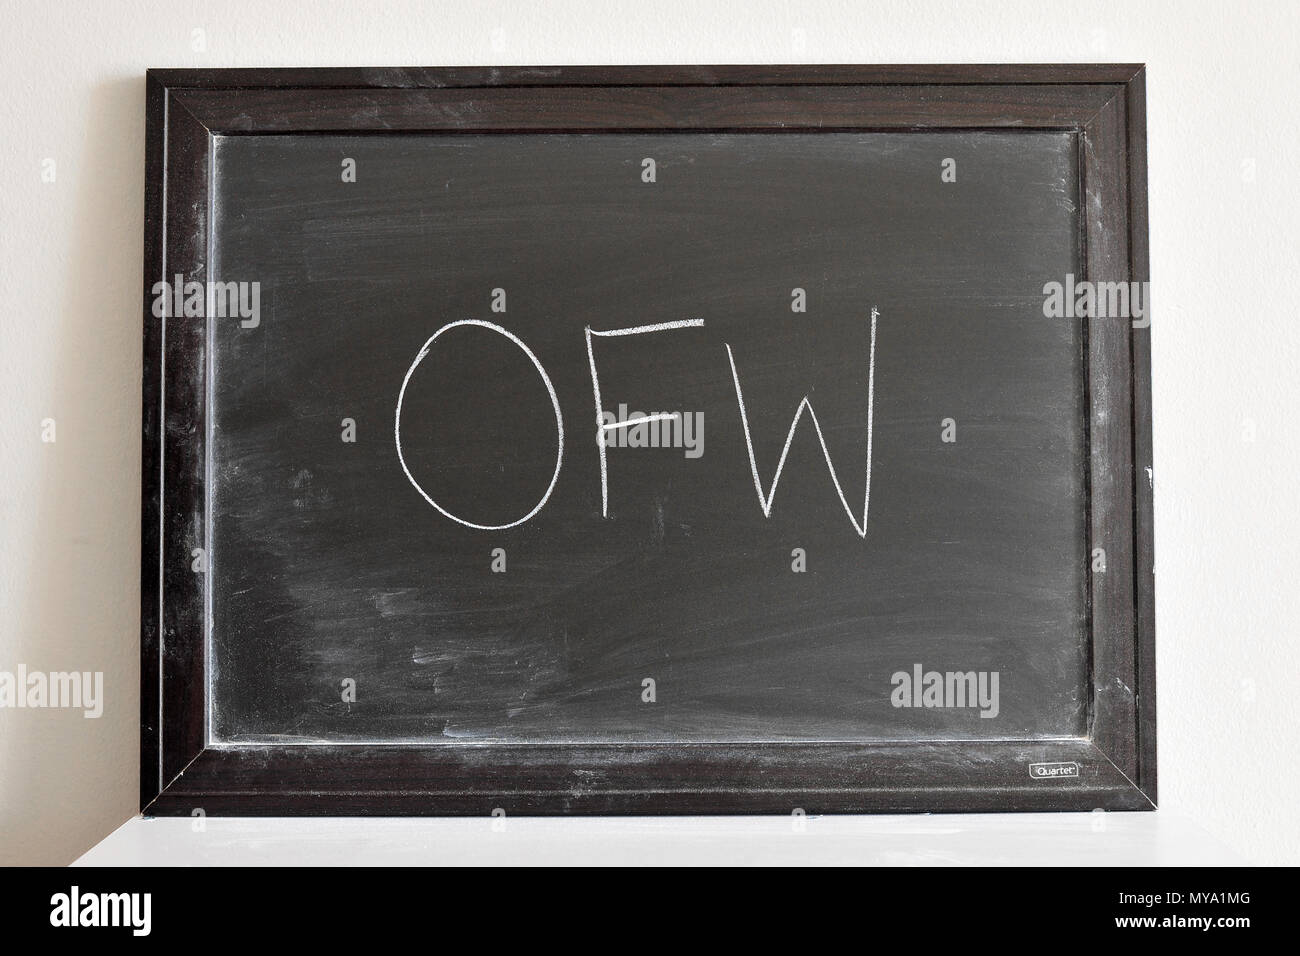 OFW written in white chalk on a blackboard Stock Photo